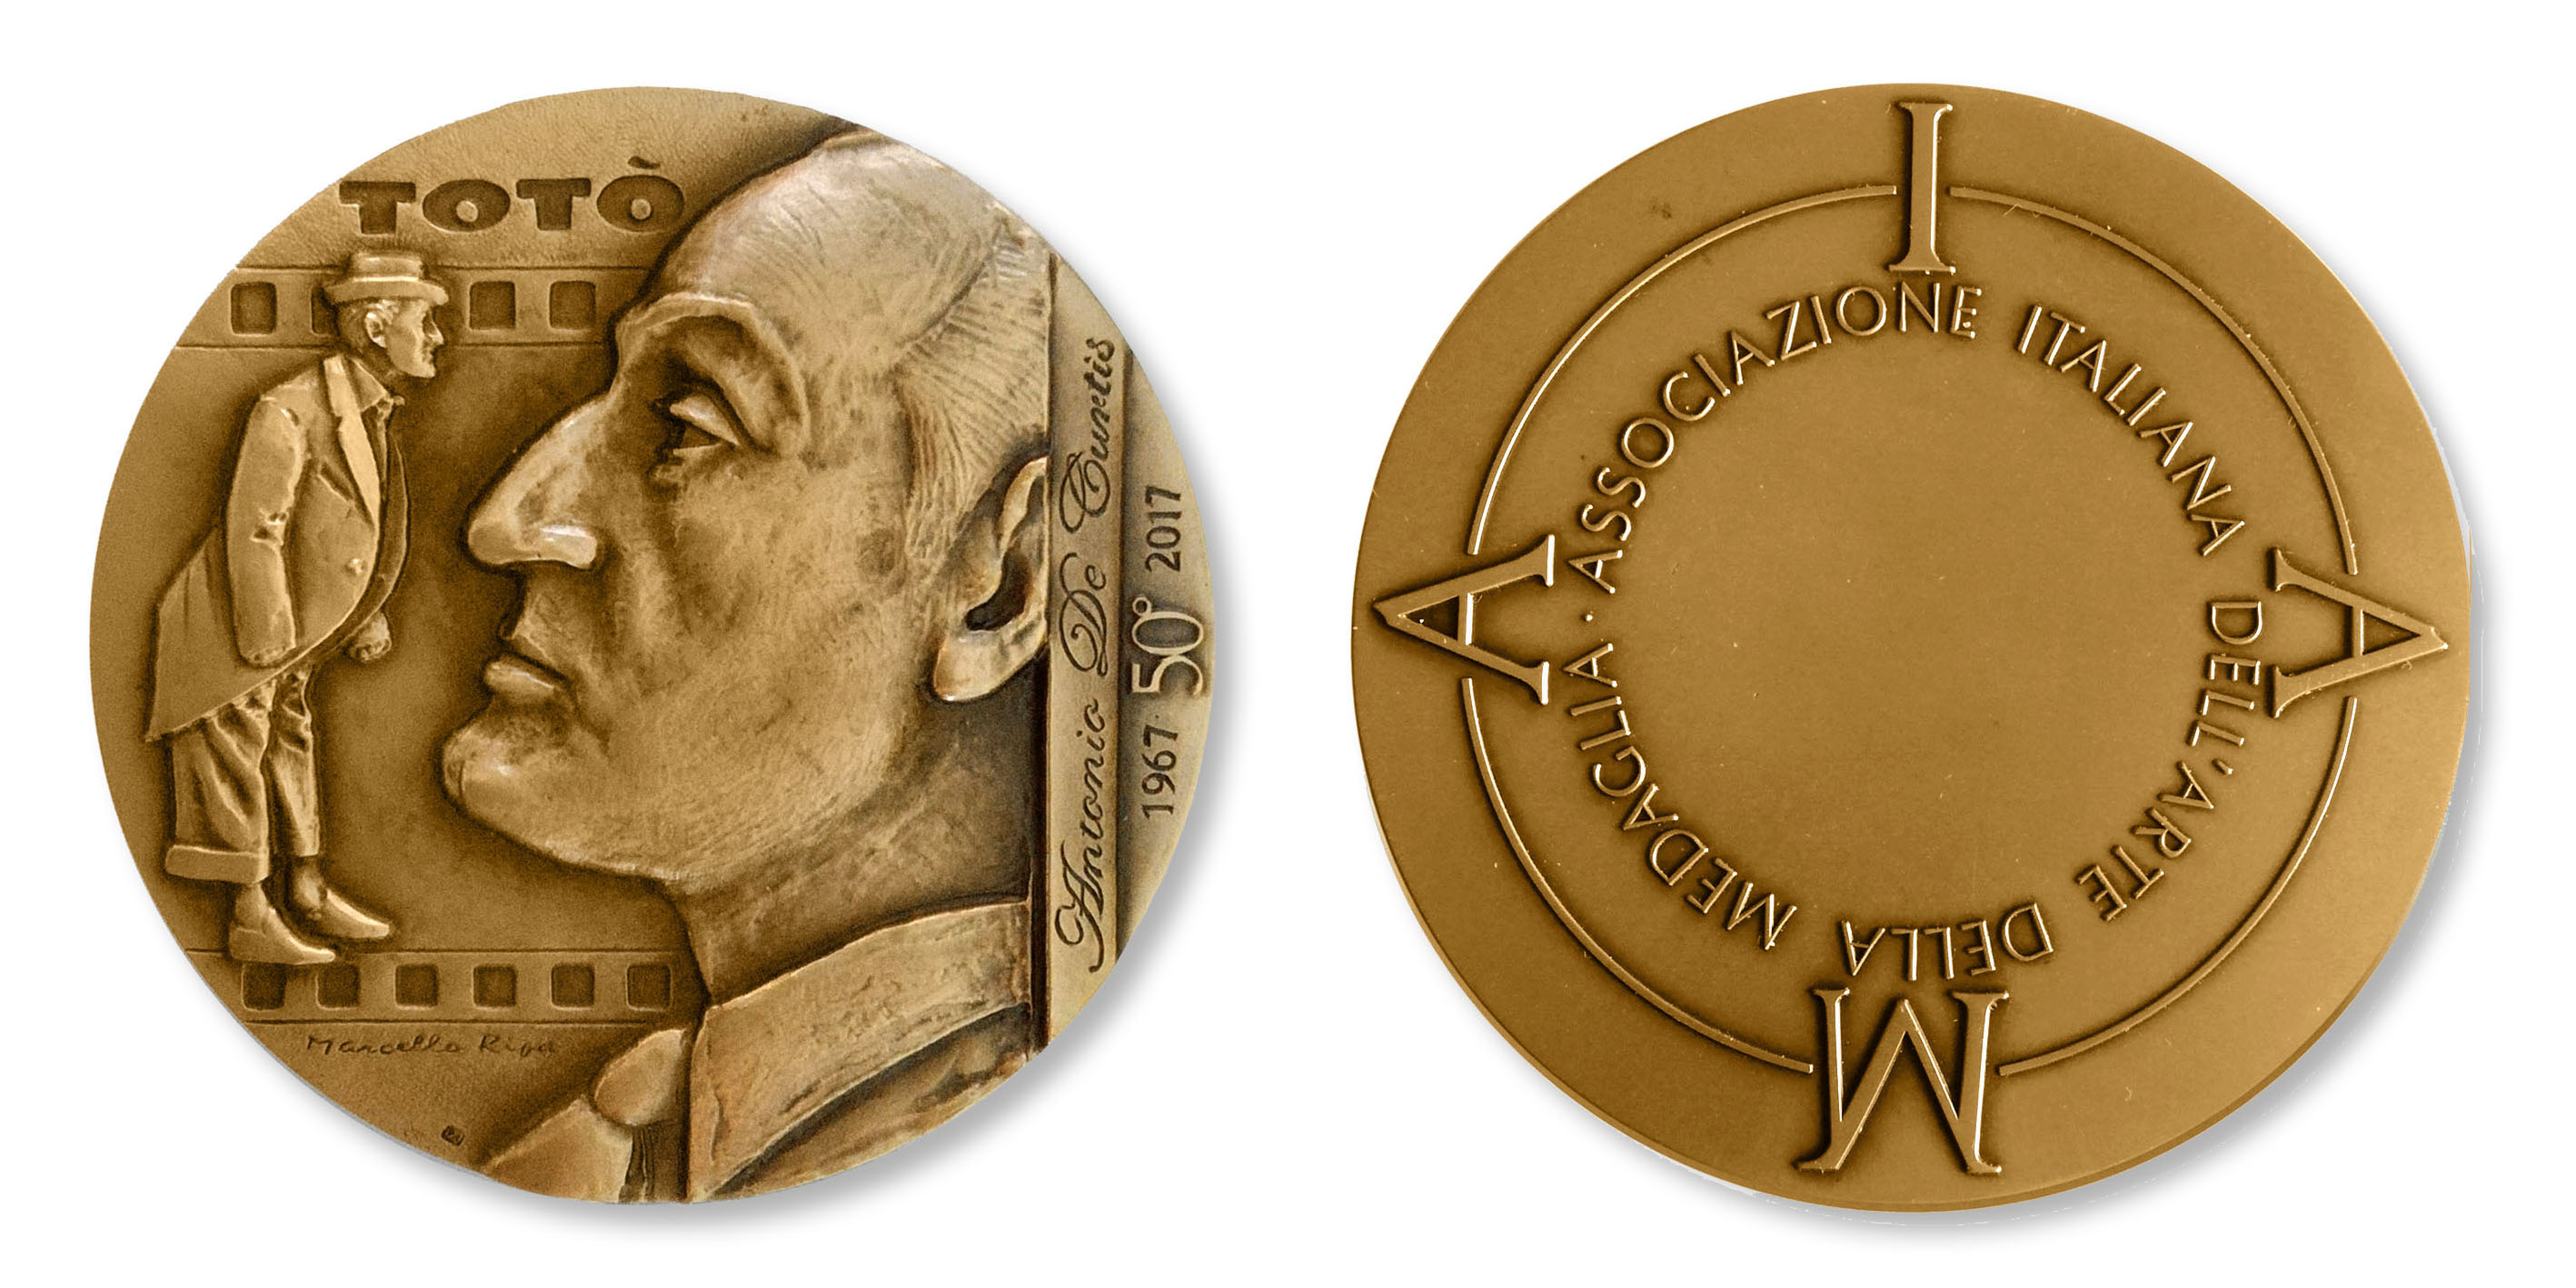 "Il principe e il comico", medaglia di Marcello Ripa per i 50 anni dalla morte di Totò (bronzo, mm 70)